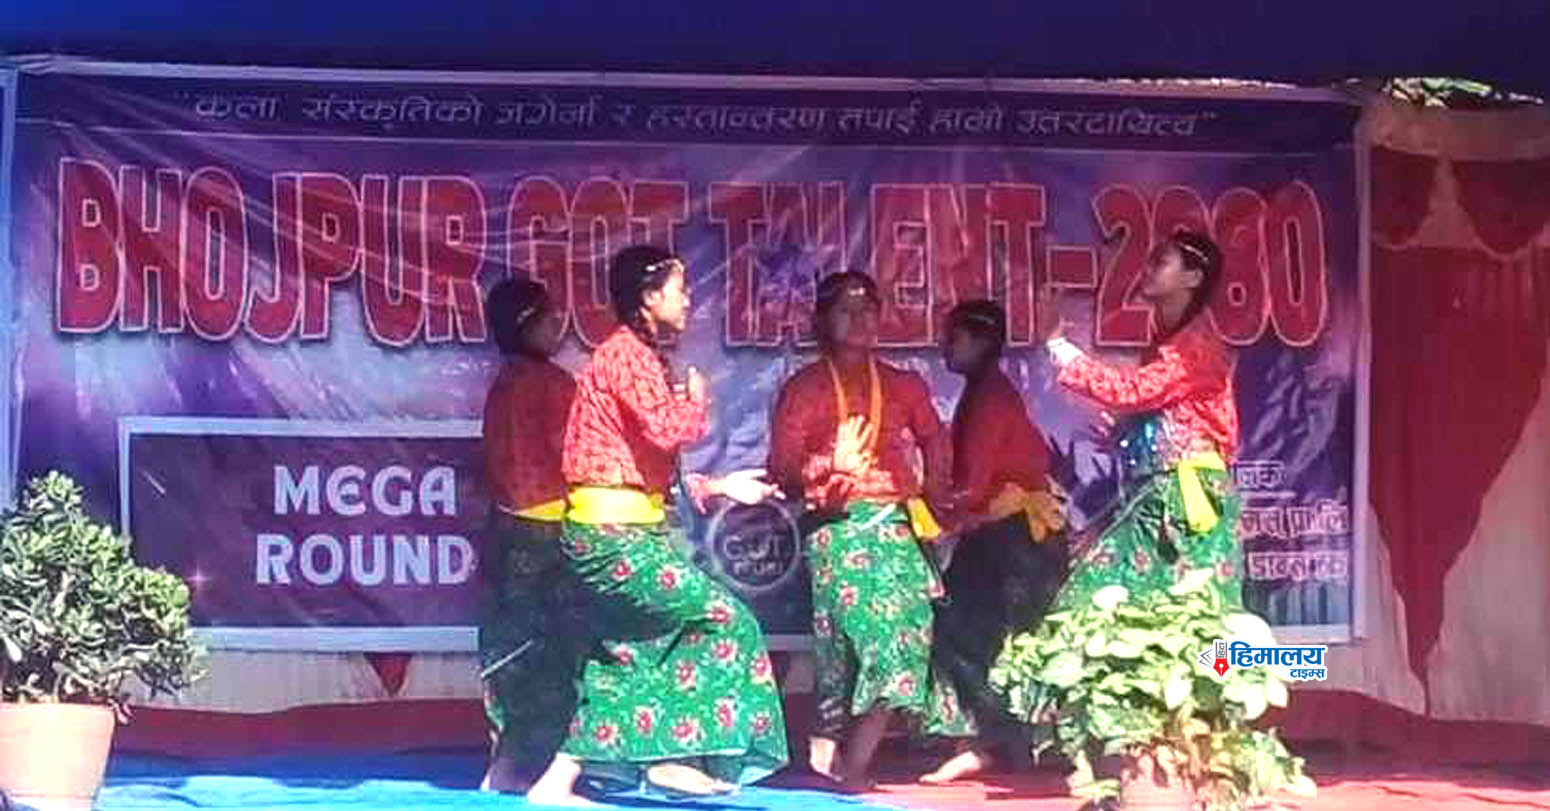 भोजपुर सदरमुकाममा मेघा राउण्ड अन्तर्गत गायन तथा नृत्य